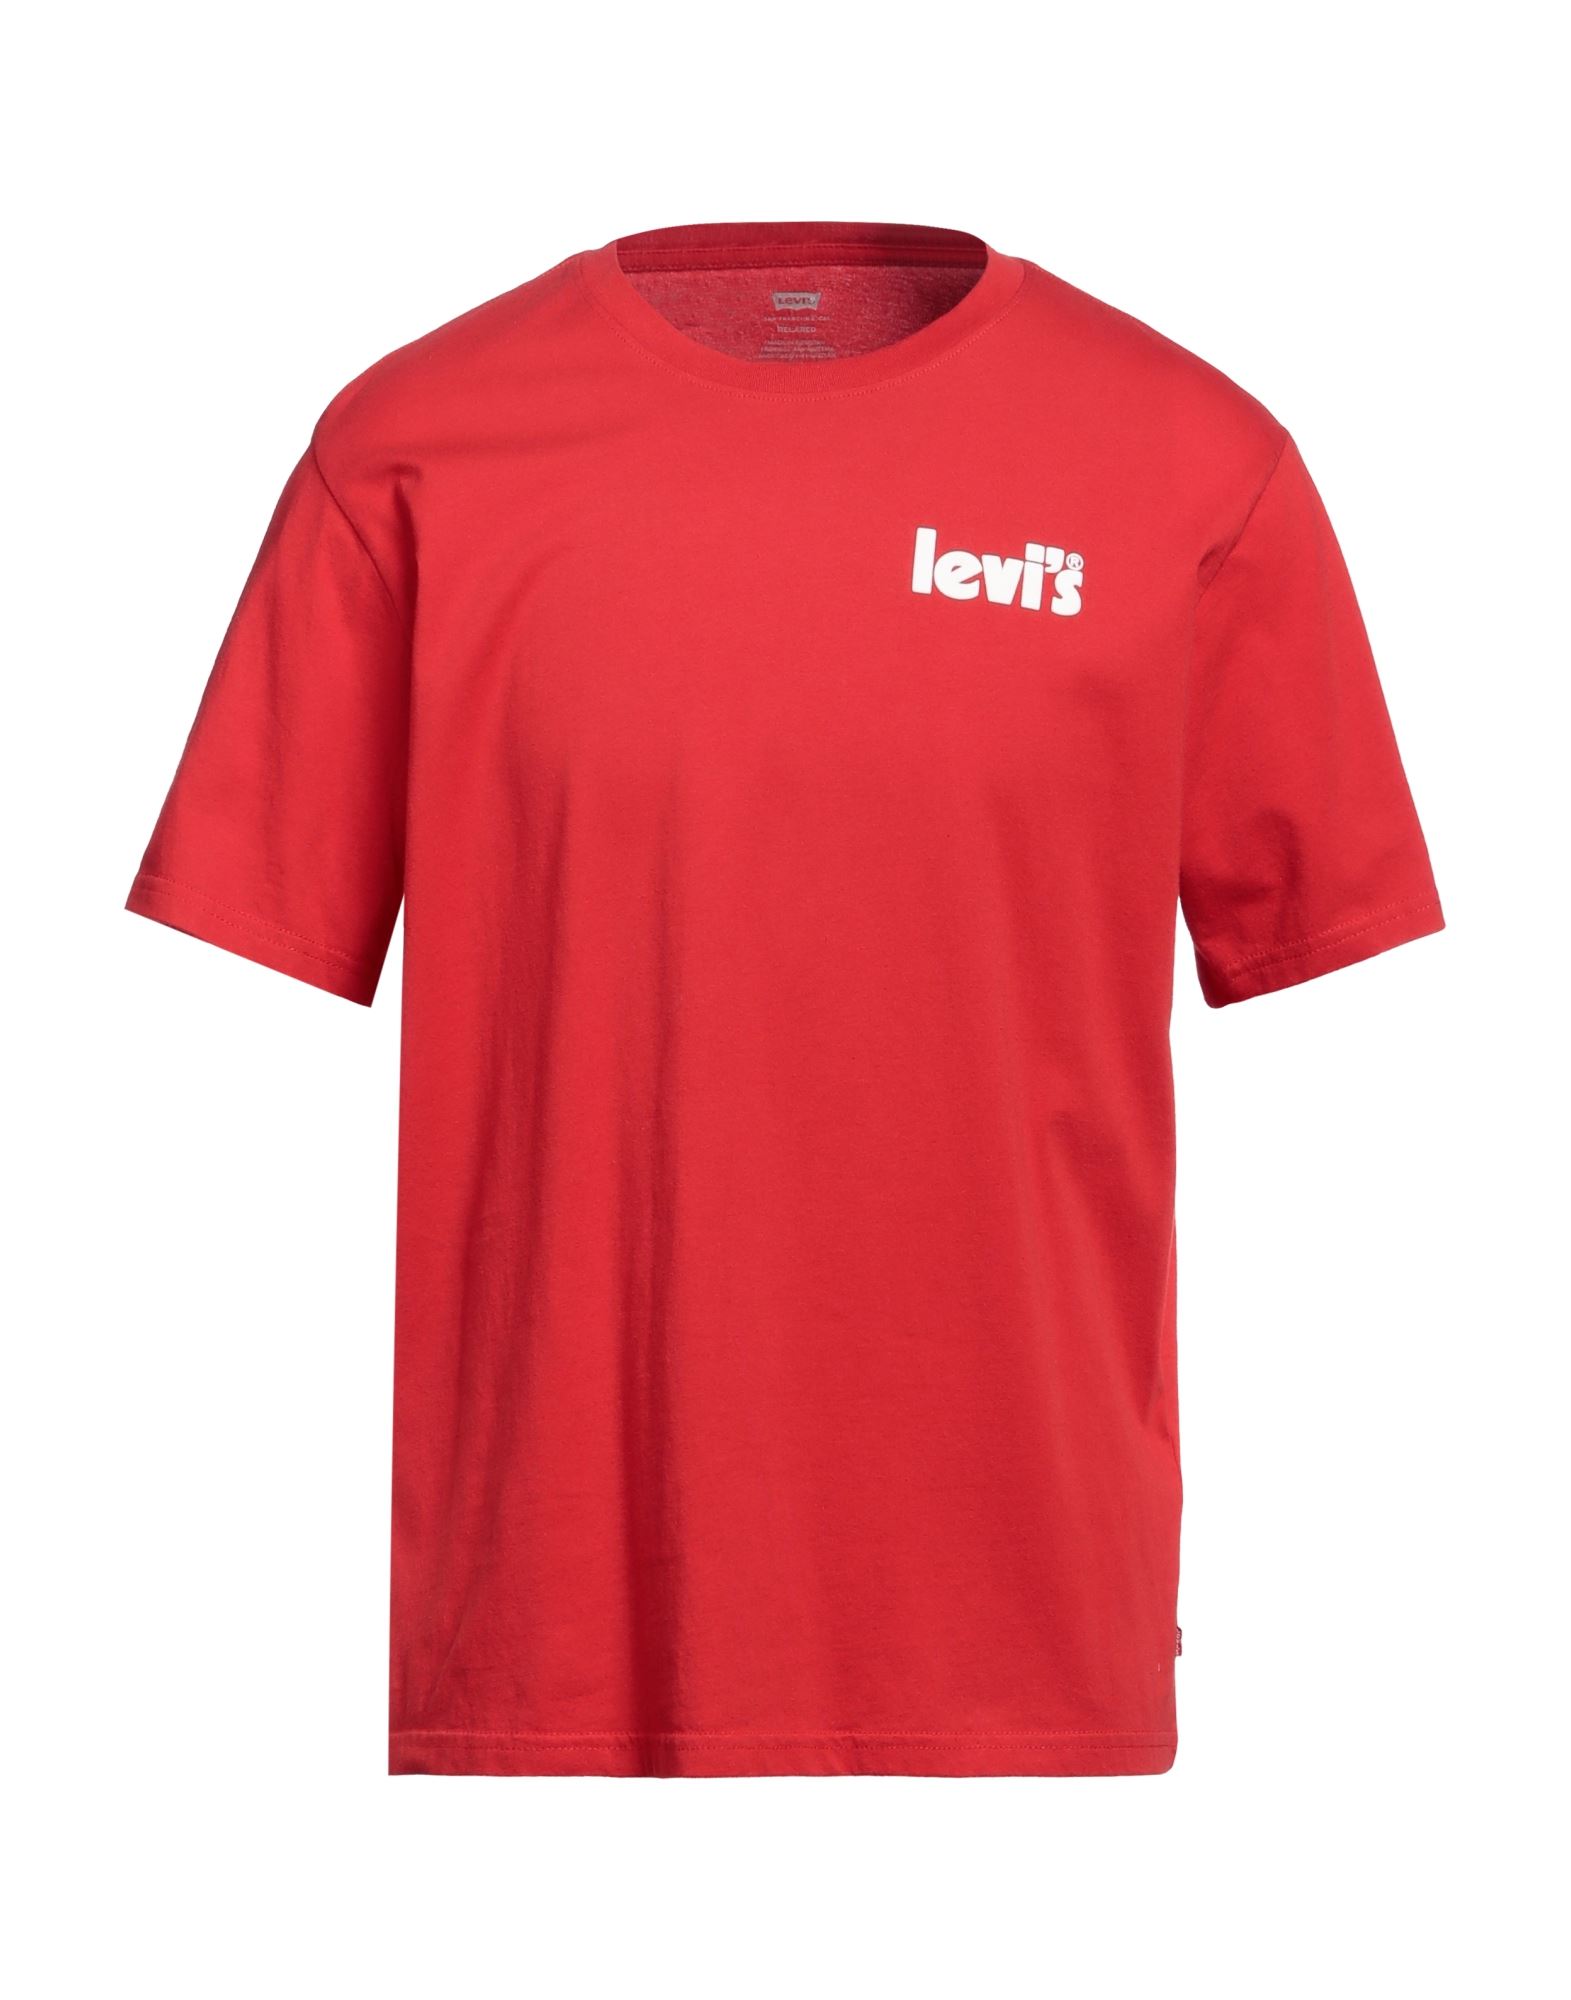 LEVI'S T-shirts Herren Rot von LEVI'S